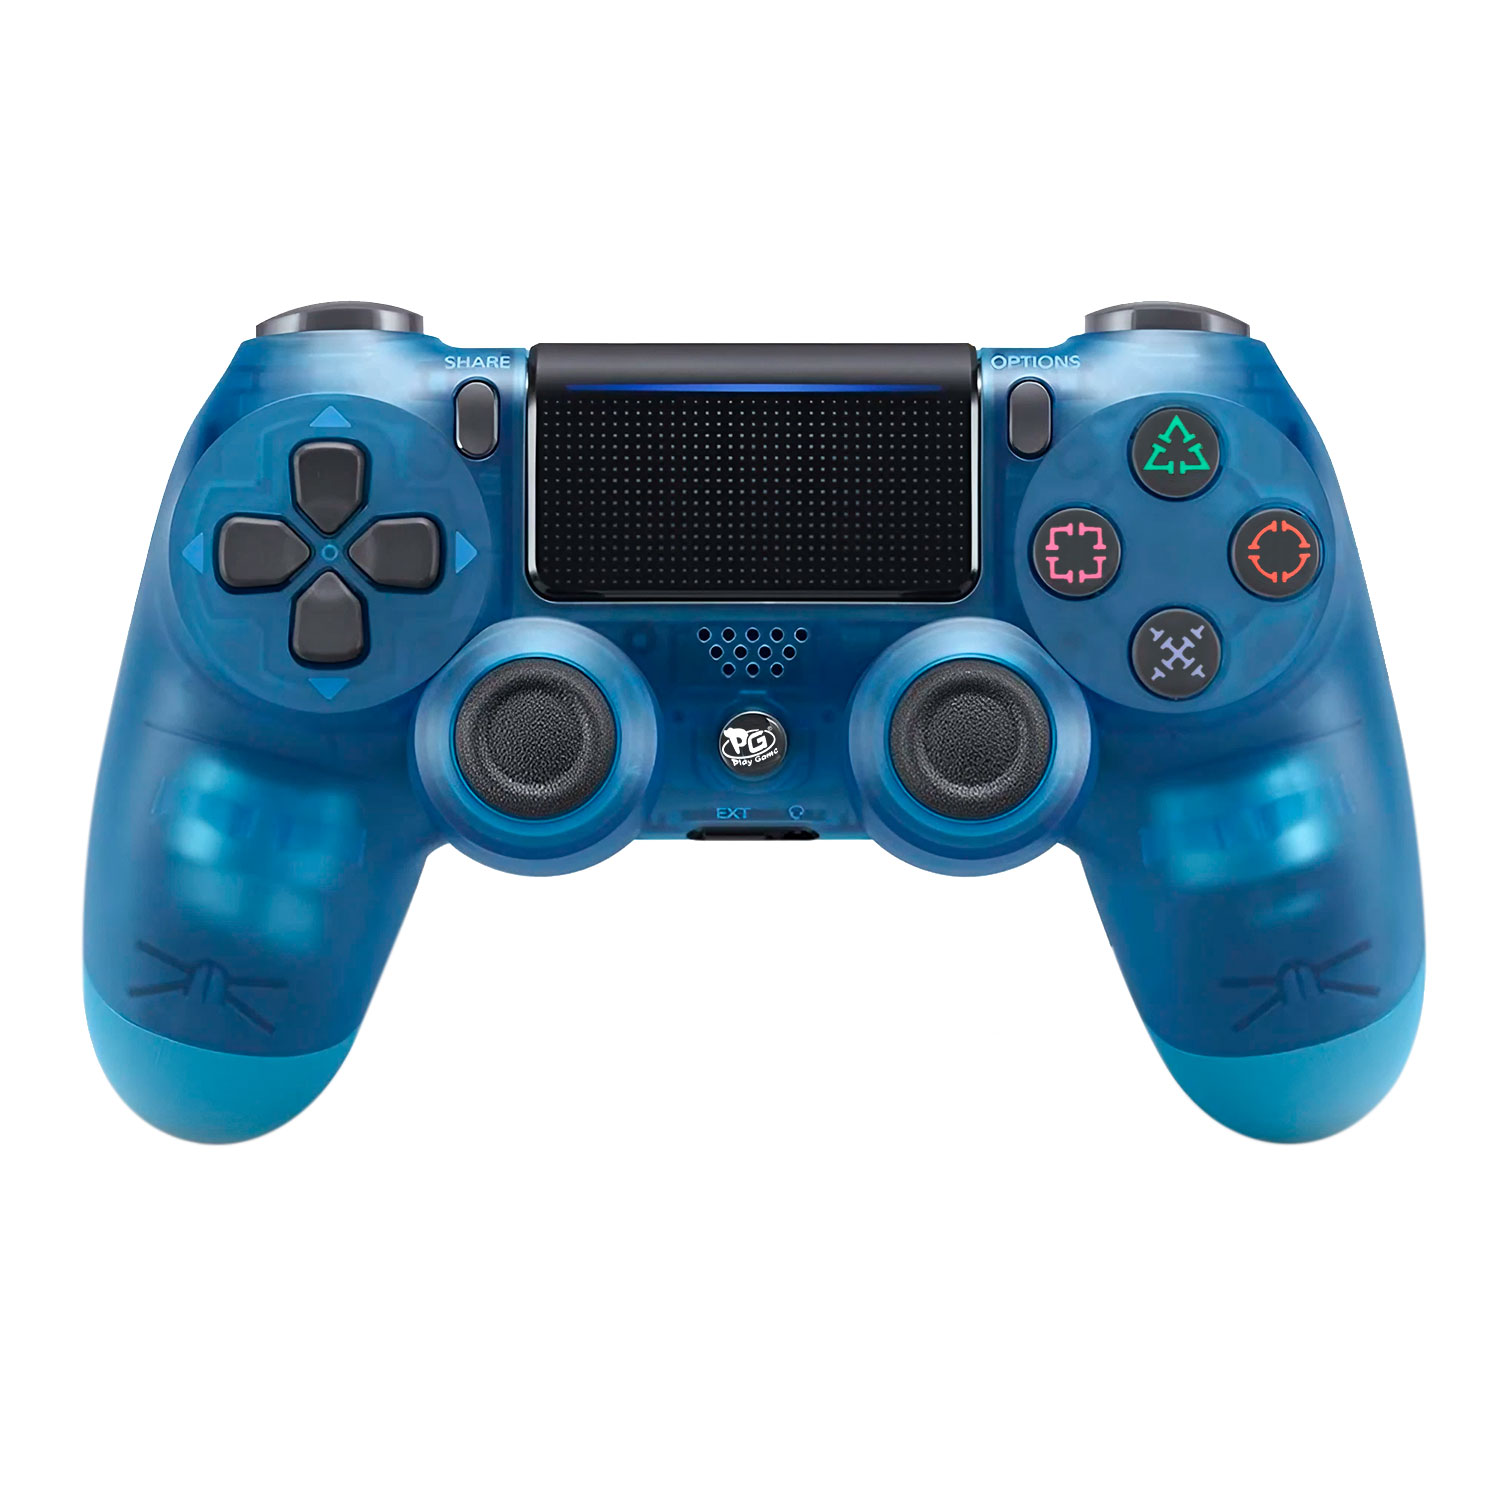 Controle Play Game Dualshock 4 Sem Fio para PS4 - Azul